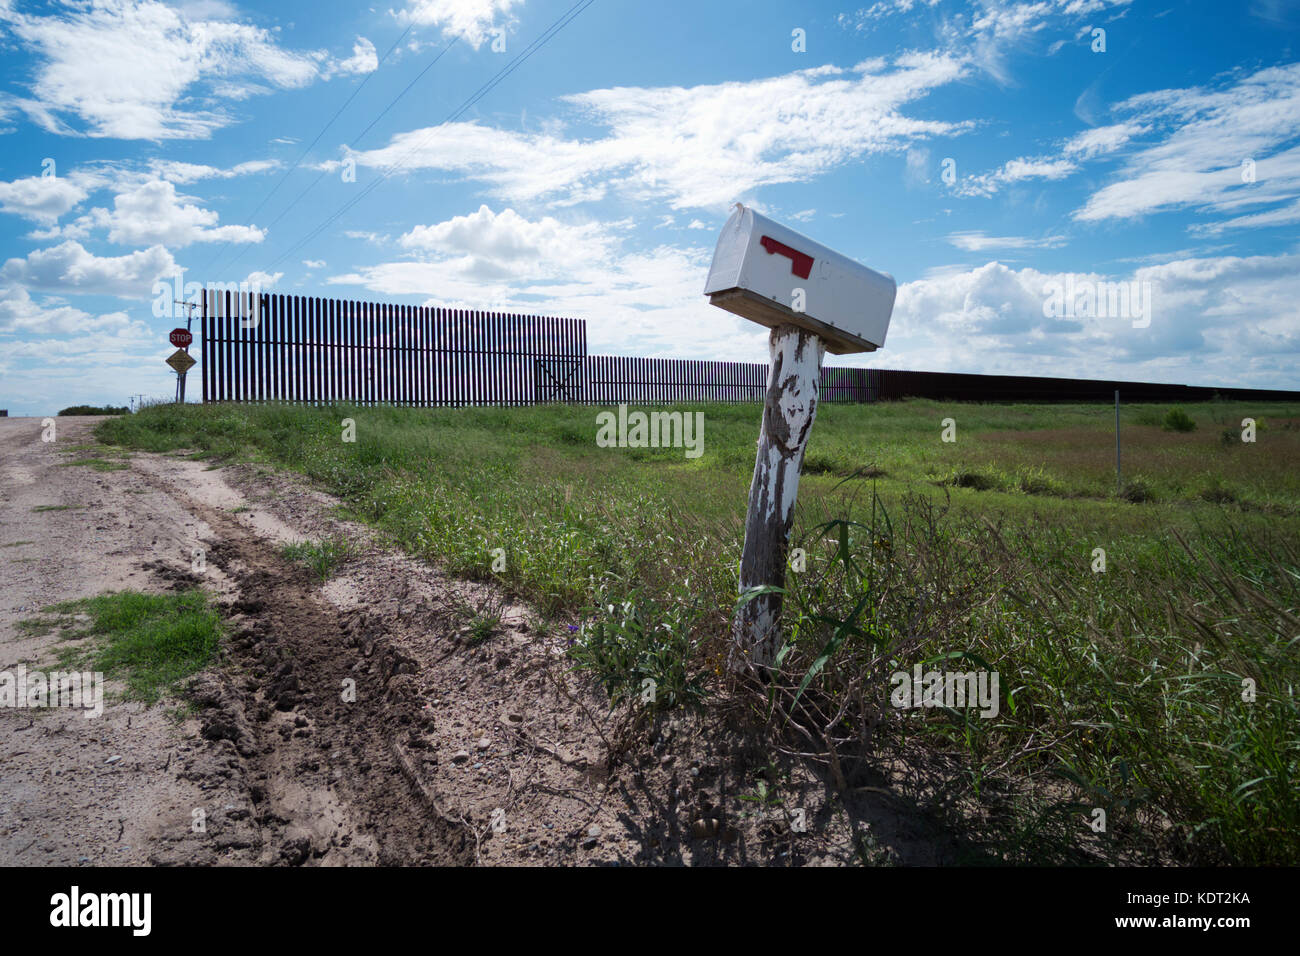 Texas Grenzzaun sitzt auf einem Deich, in der Nähe von Texas an der mexikanischen Grenze mit einem Bauern Mailbox in den Vordergrund. Dieser Teil des Zauns wurde während gebaut Stockfoto